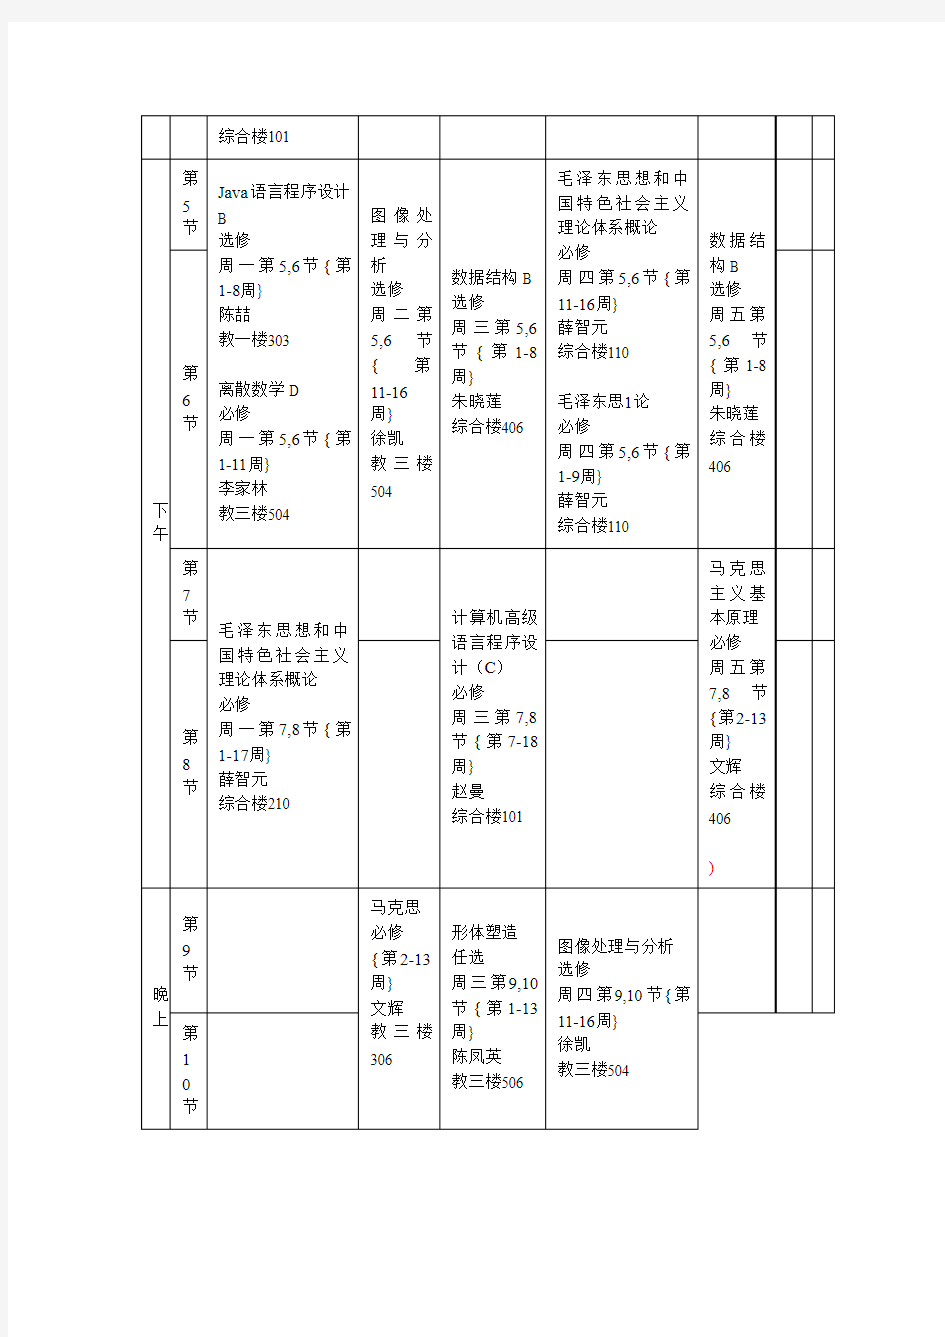 中国地质大学2013学年第1学期学生个人课程表